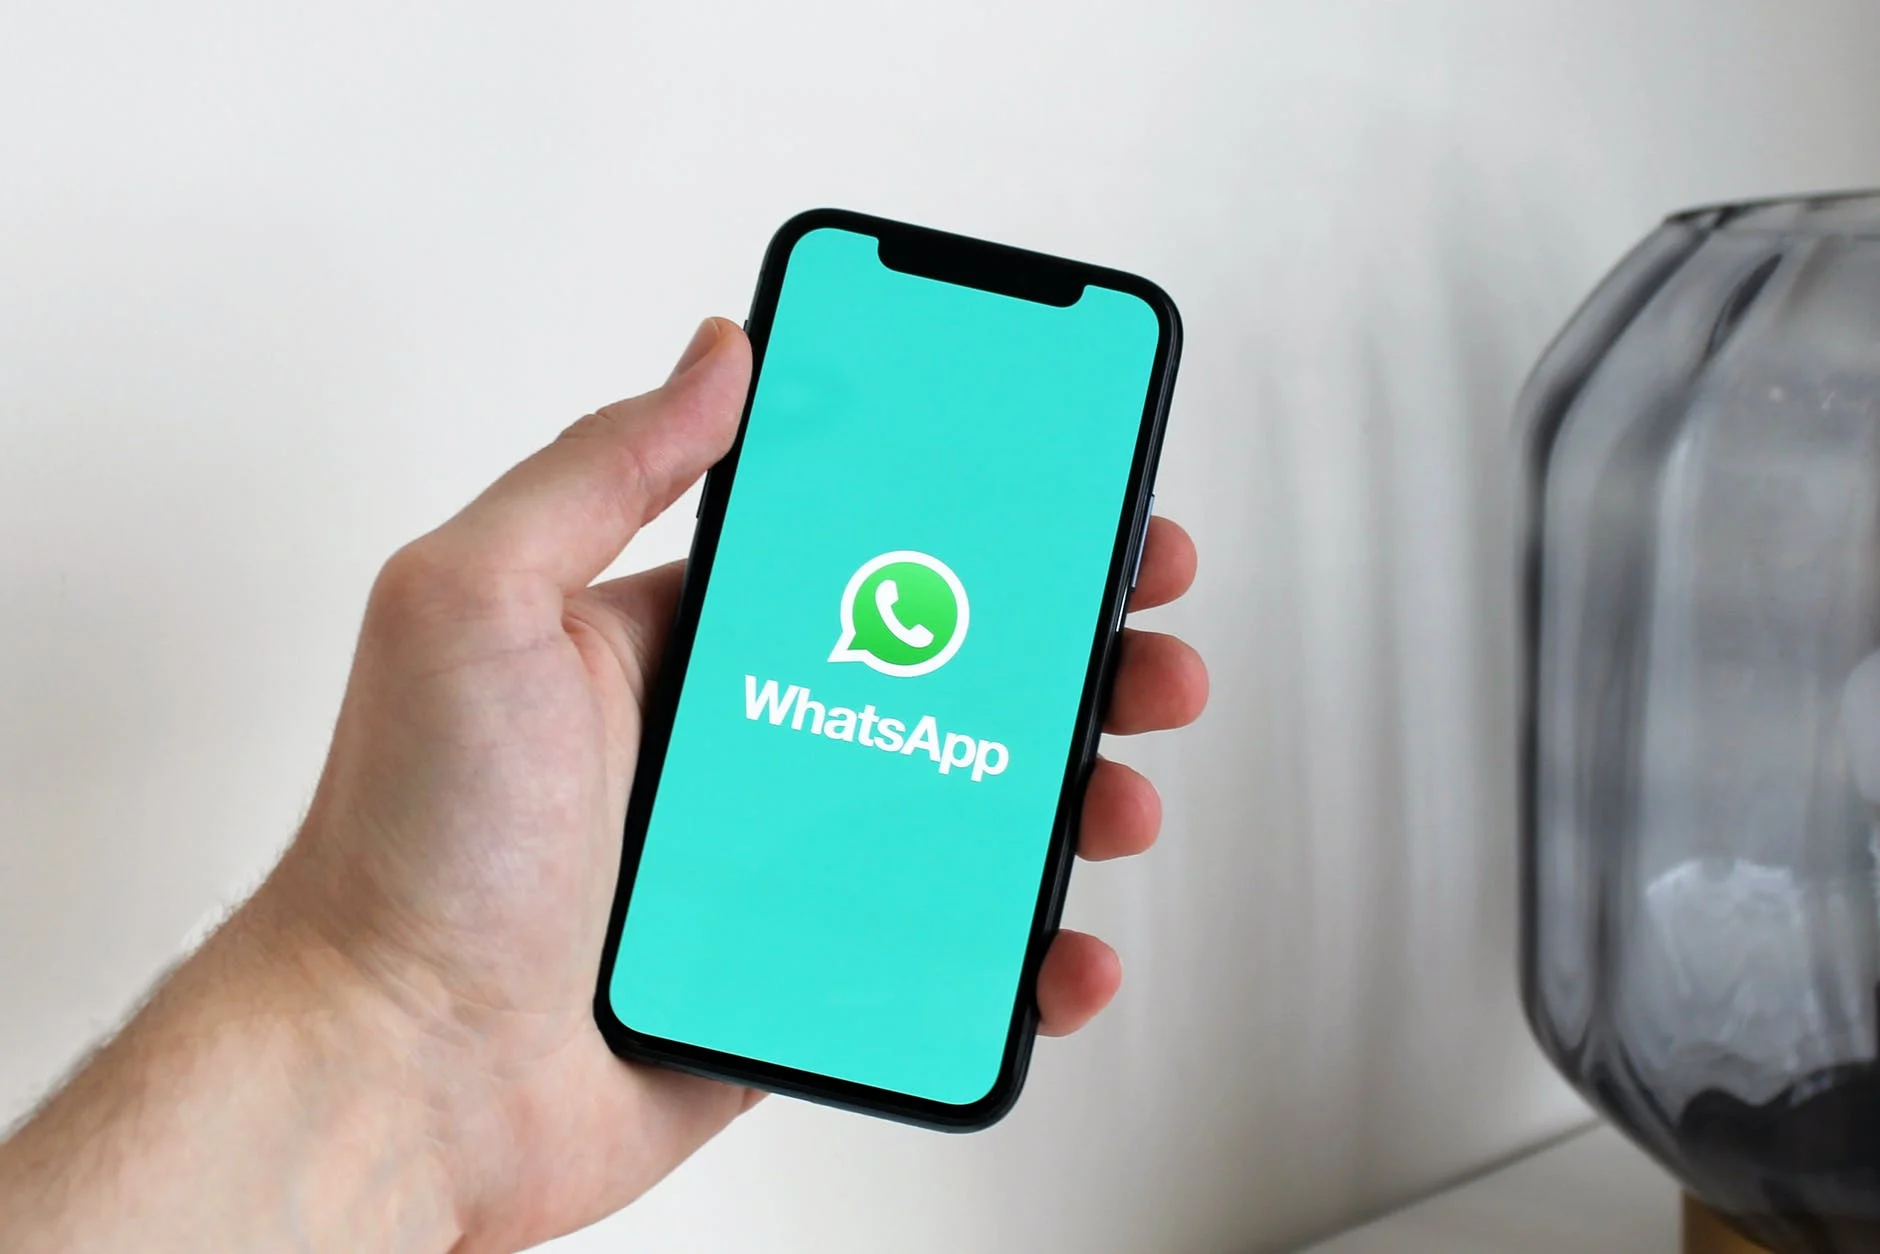 Suspensão de contas do WhatsApp GB